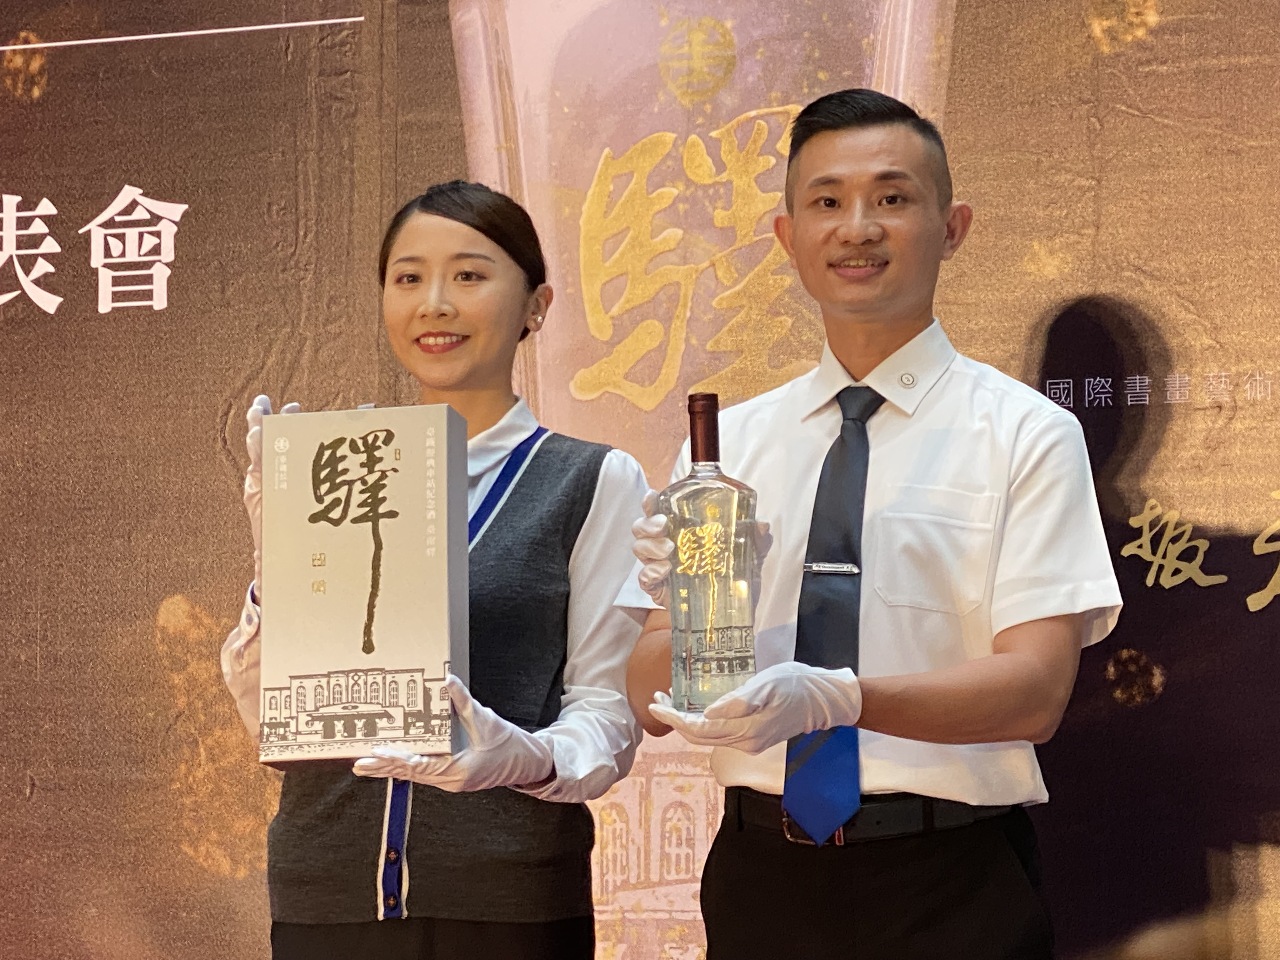 慶祝台鐵公司元年 第137屆鐵路節推出台南驛紀念酒